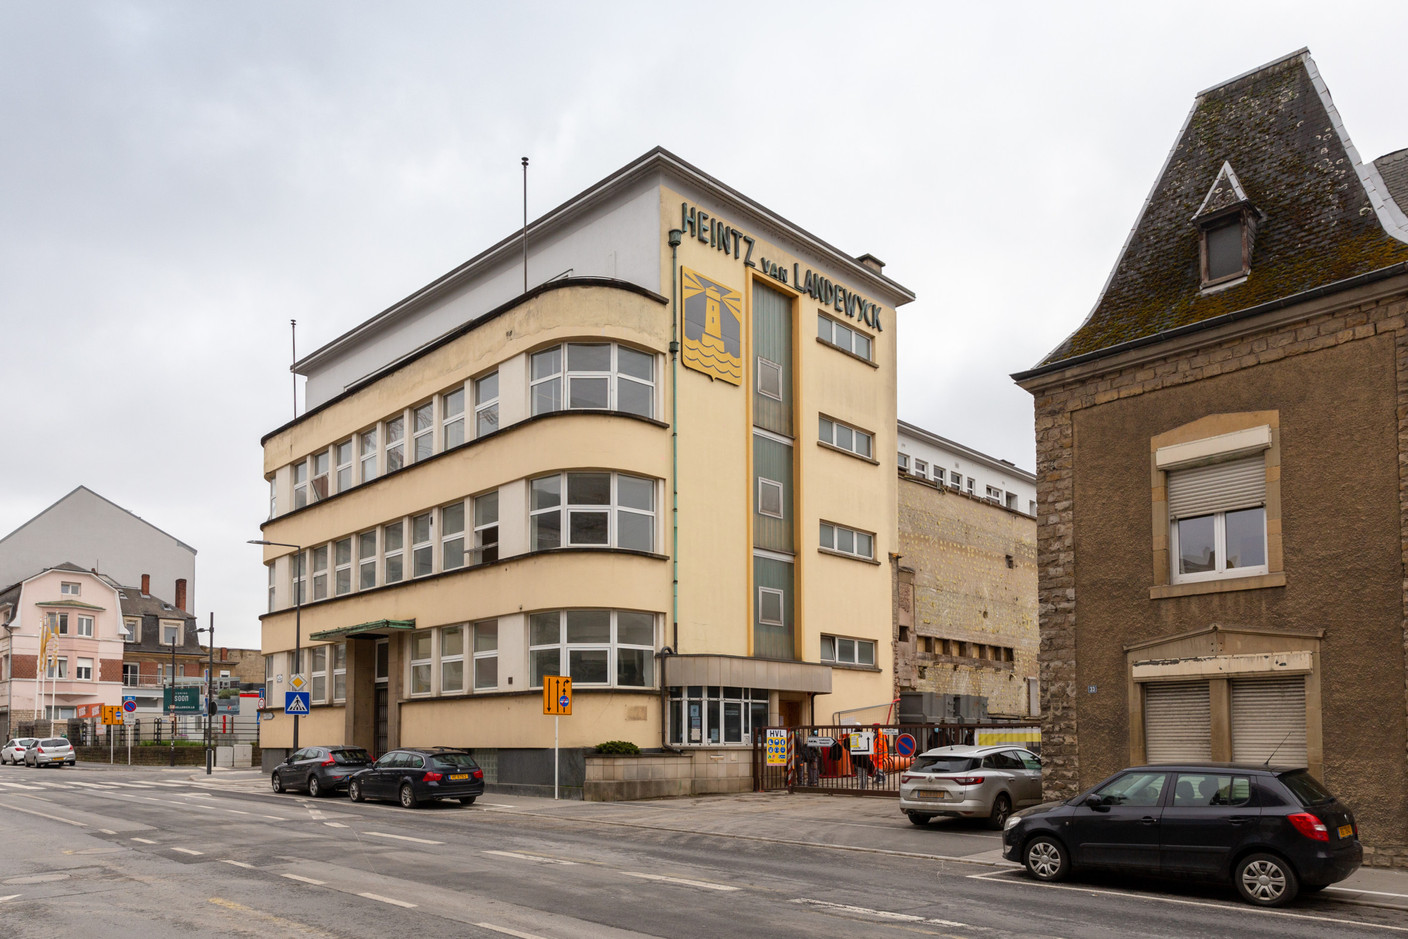 Aujourd’hui, le bâtiment est un des points de repère du quartier de Hollerich. (Photo: Romain Gamba / Maison Moderne)